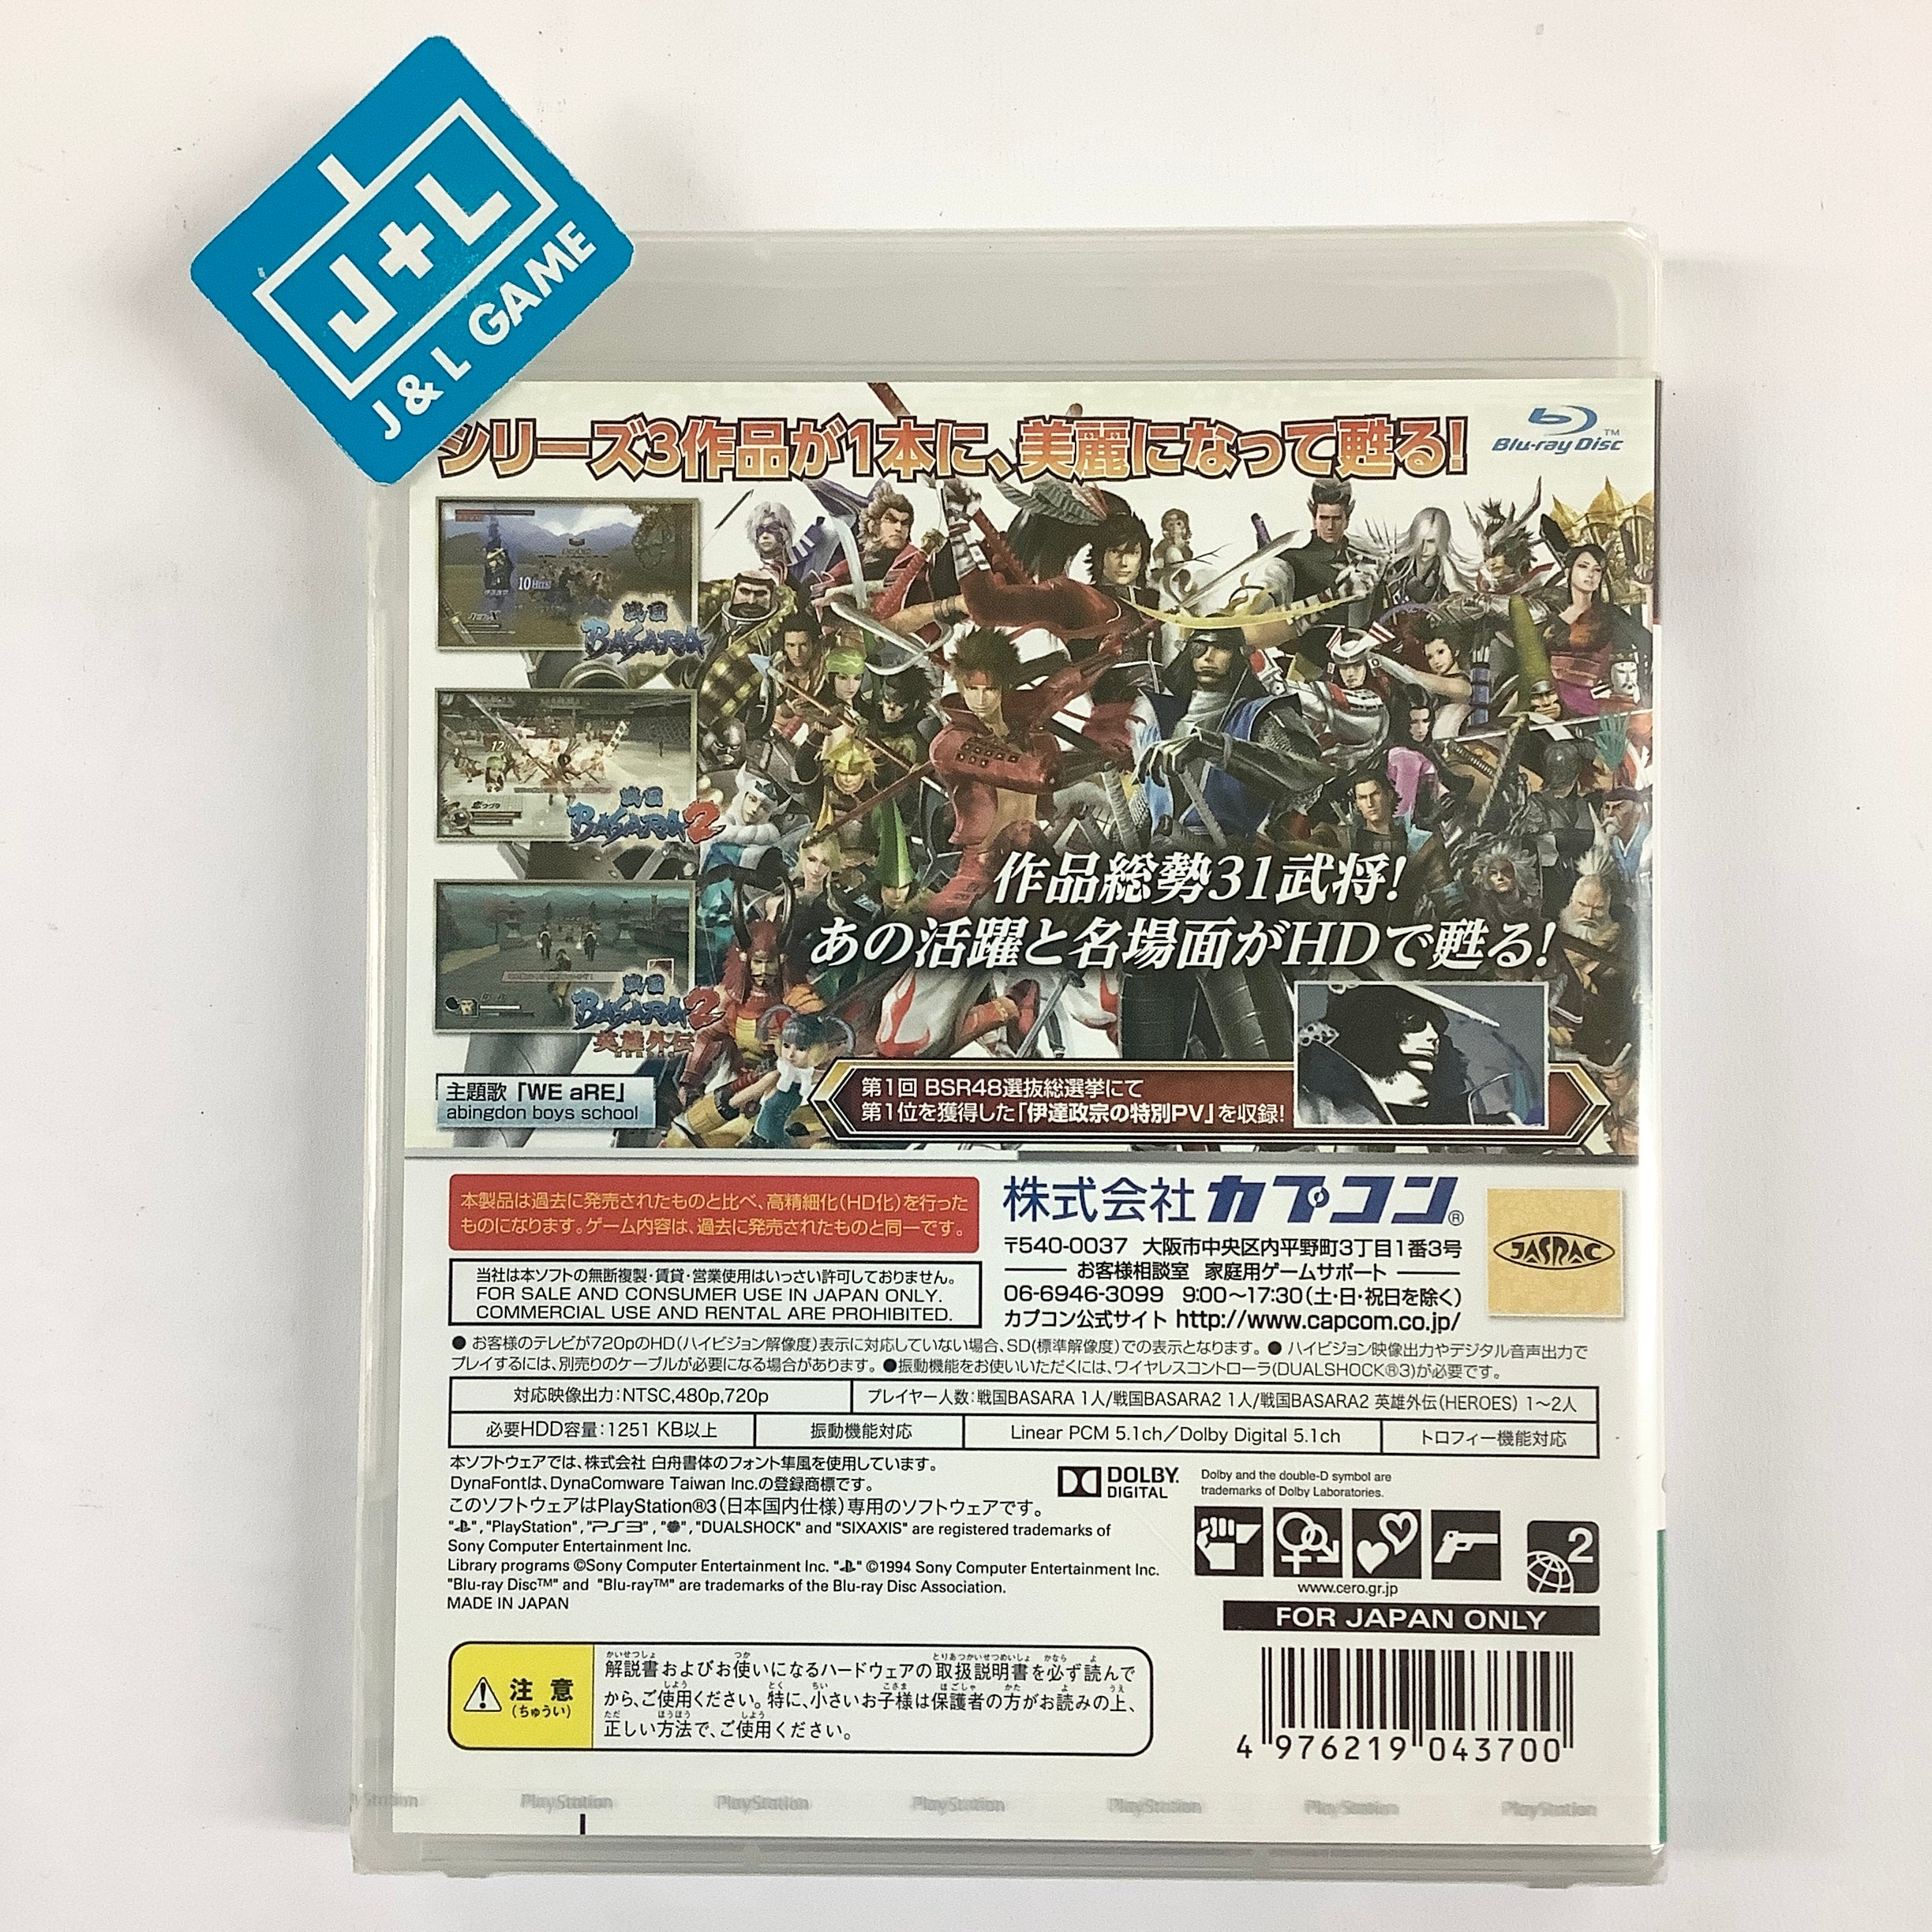 Sengoku Basara HD Collection - (PS3) PlayStation 3 (Japanese Import) Video Games Capcom   